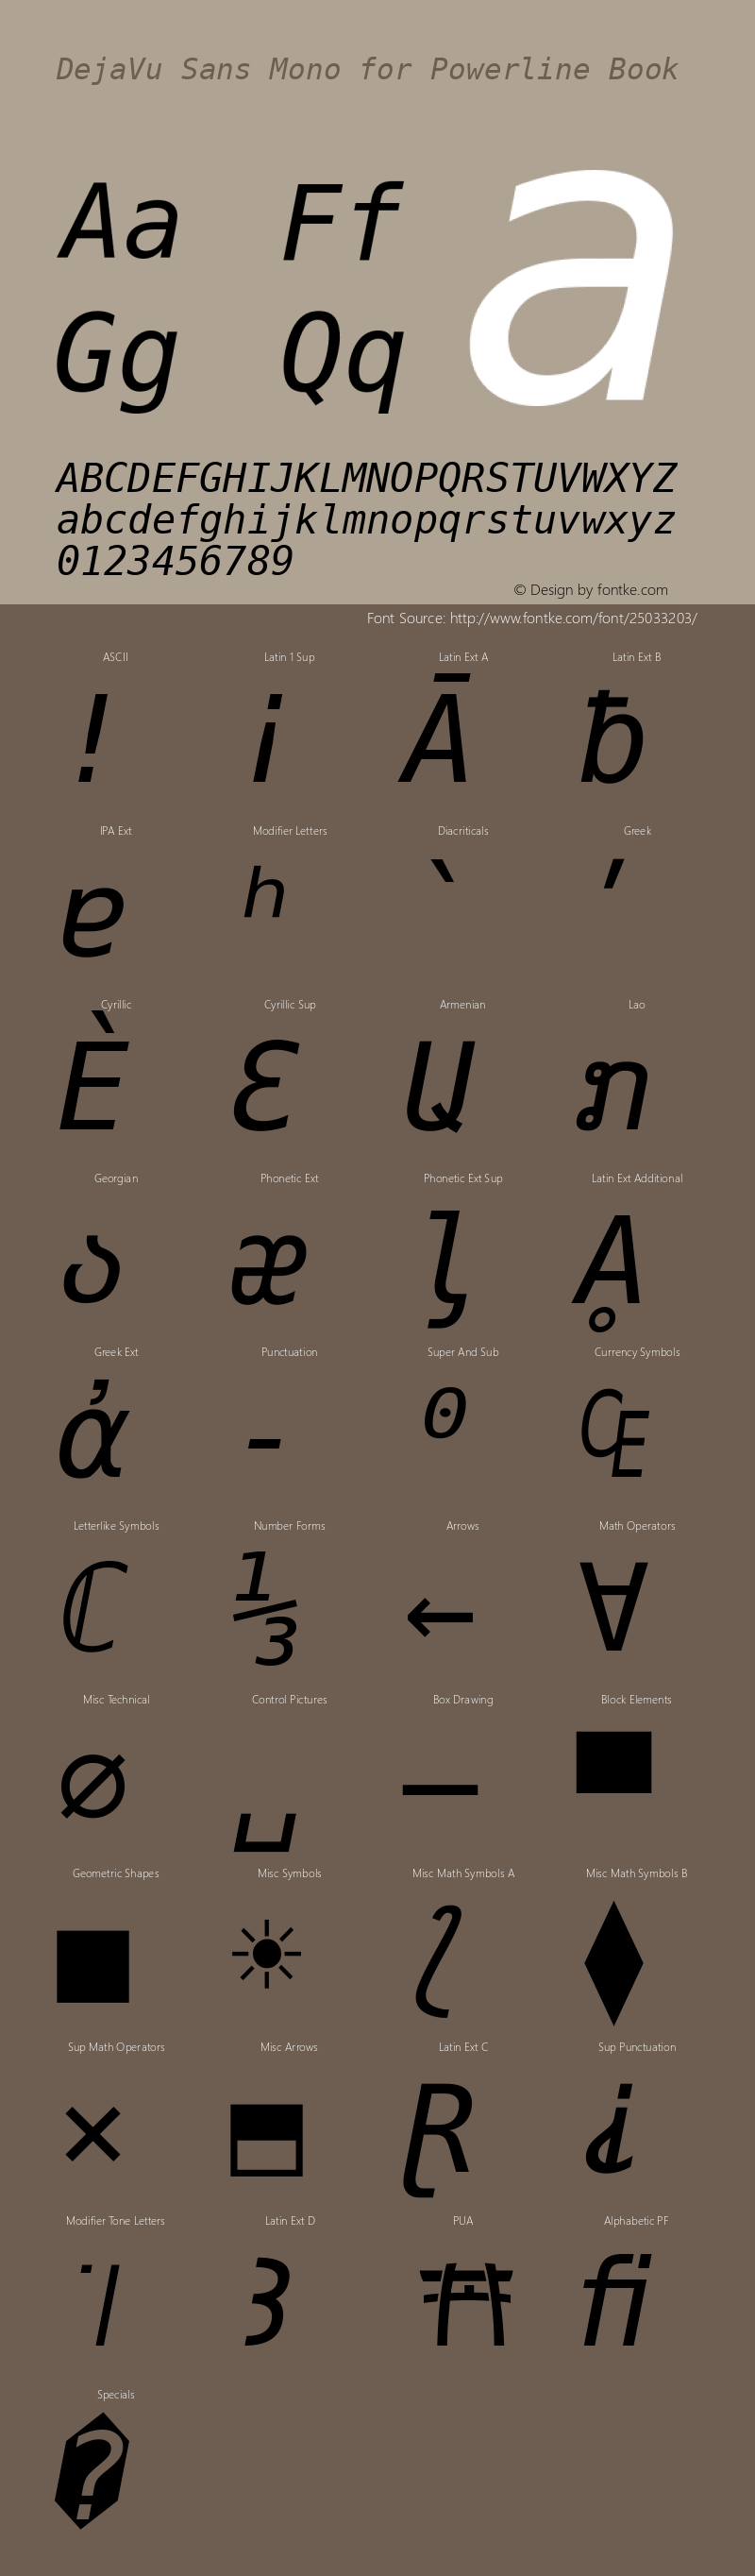 DejaVu Sans Mono Oblique for Powerline Nerd Font Plus Font Awesome Plus Pomicons Windows Compatible Version 2.33图片样张